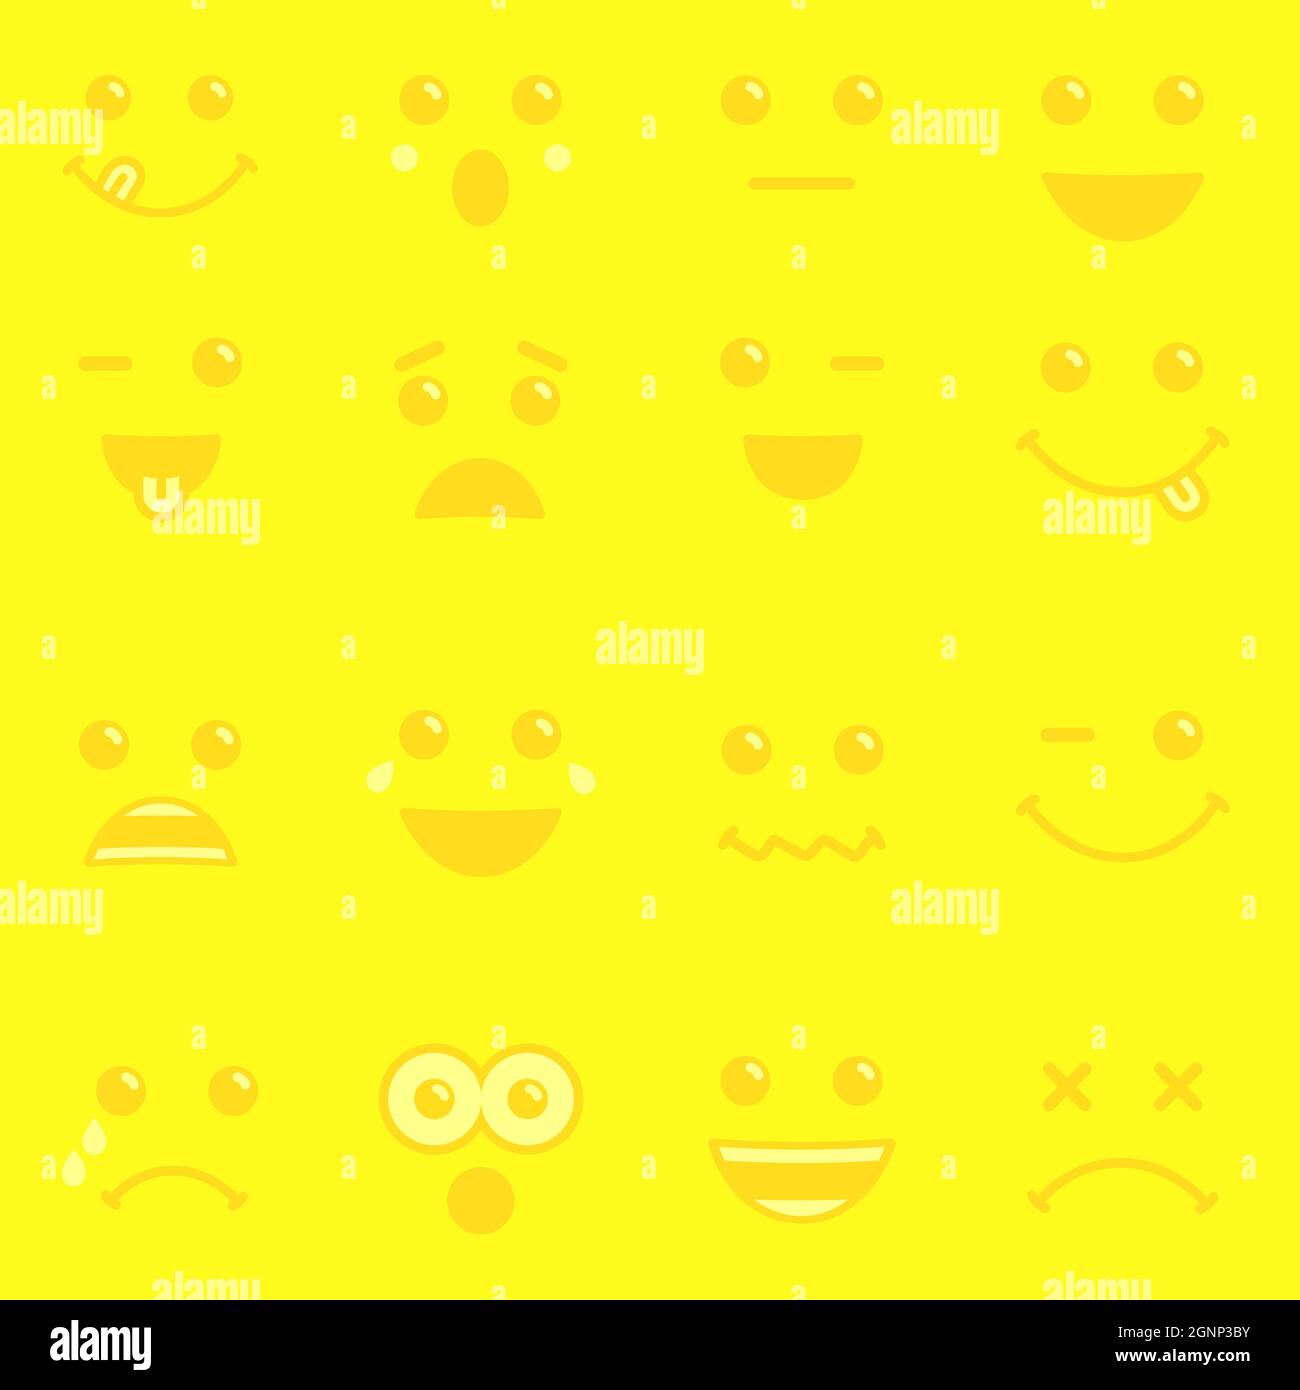 Icônes emoji fond de motif vectoriel jaune. Émoticônes souriantes pour les fêtes de fin d'année ou d'anniversaire. Journée mondiale du sourire, 1er octobre Illustration de Vecteur